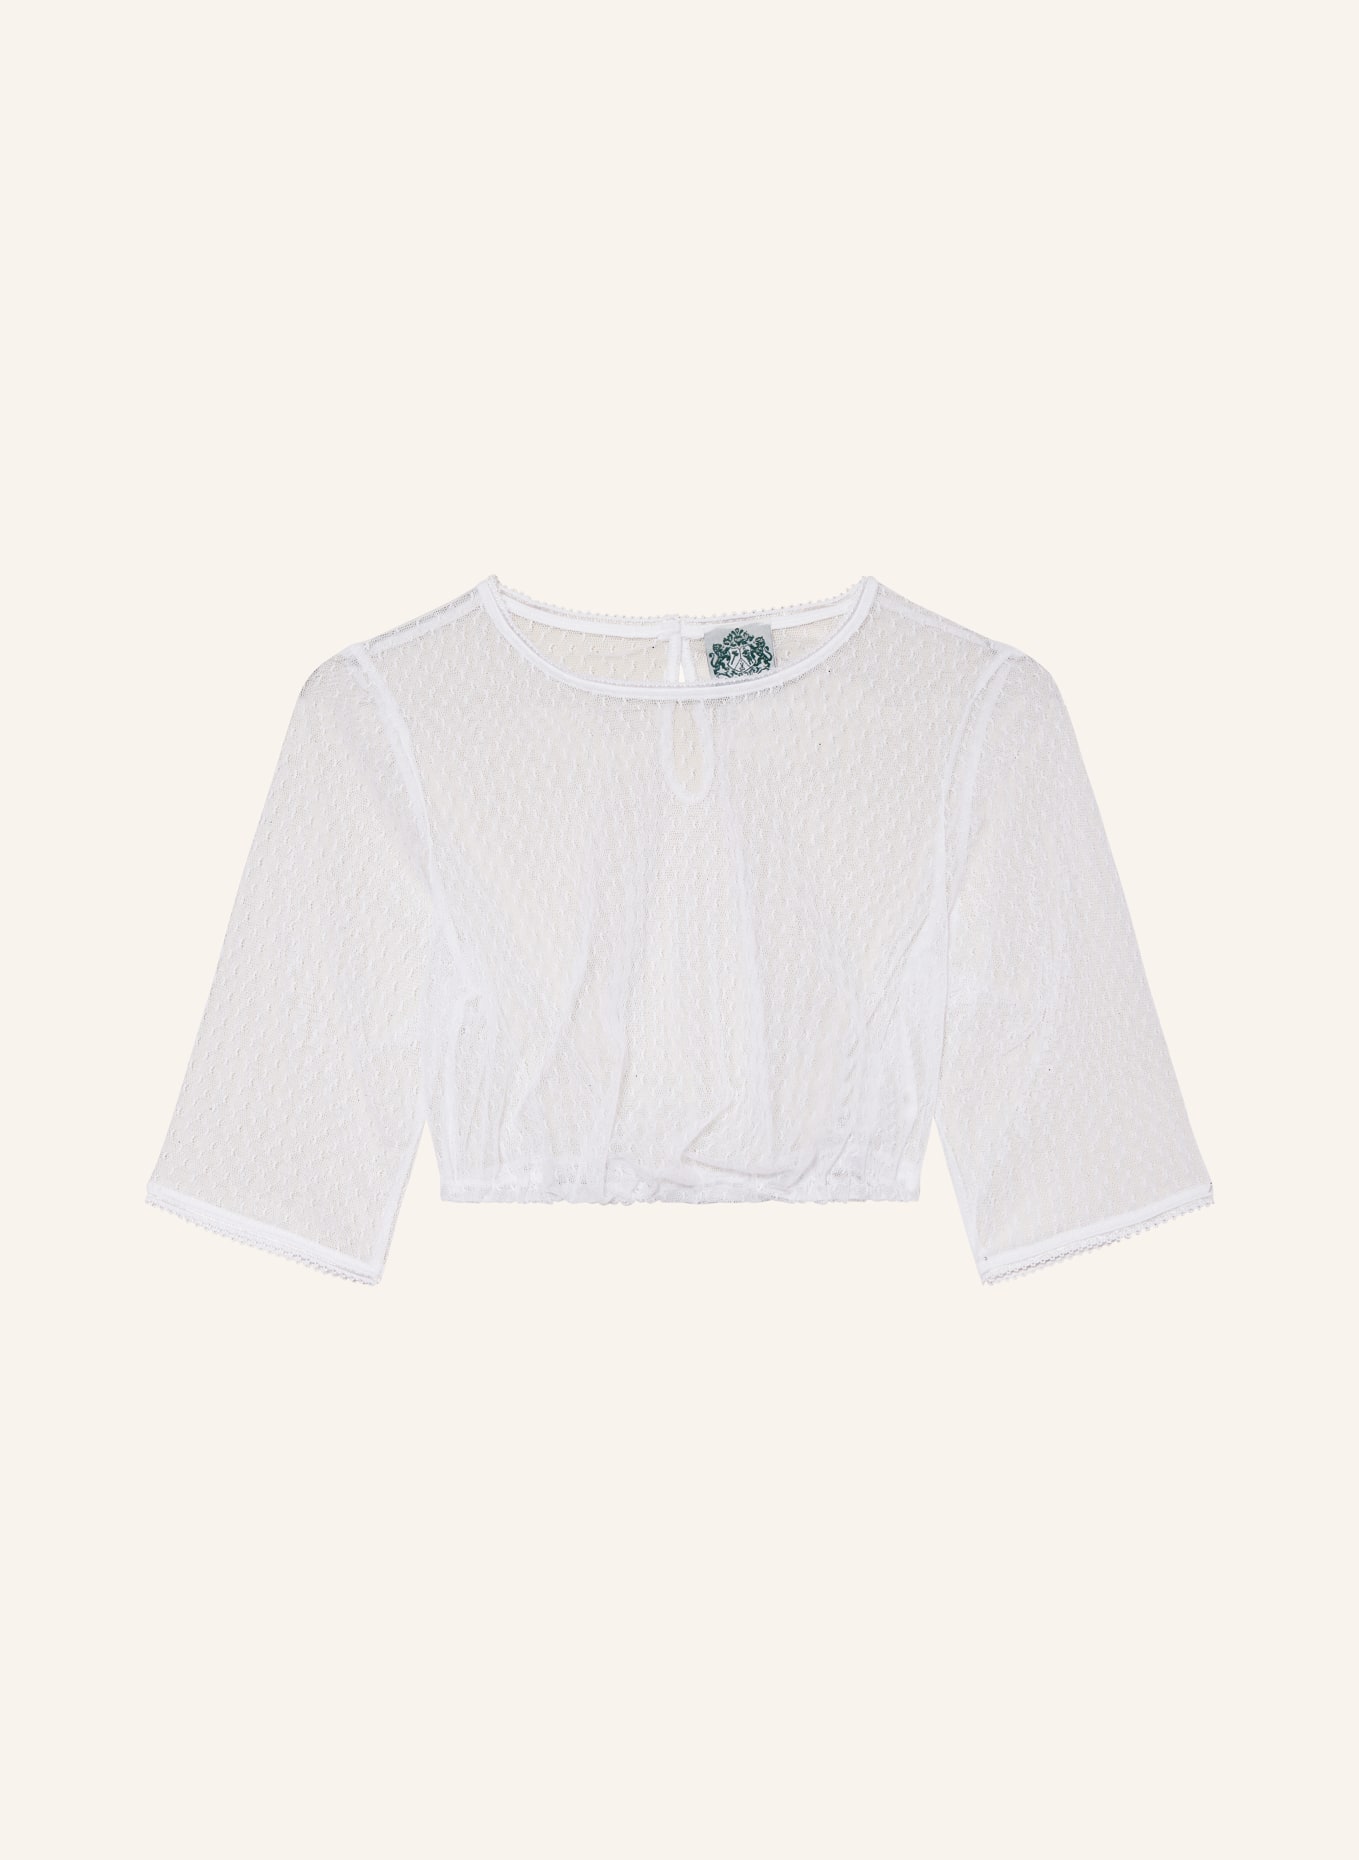 Hammerschmid Dirndl blouse CLARISSA, Color: WHITE (Image 1)